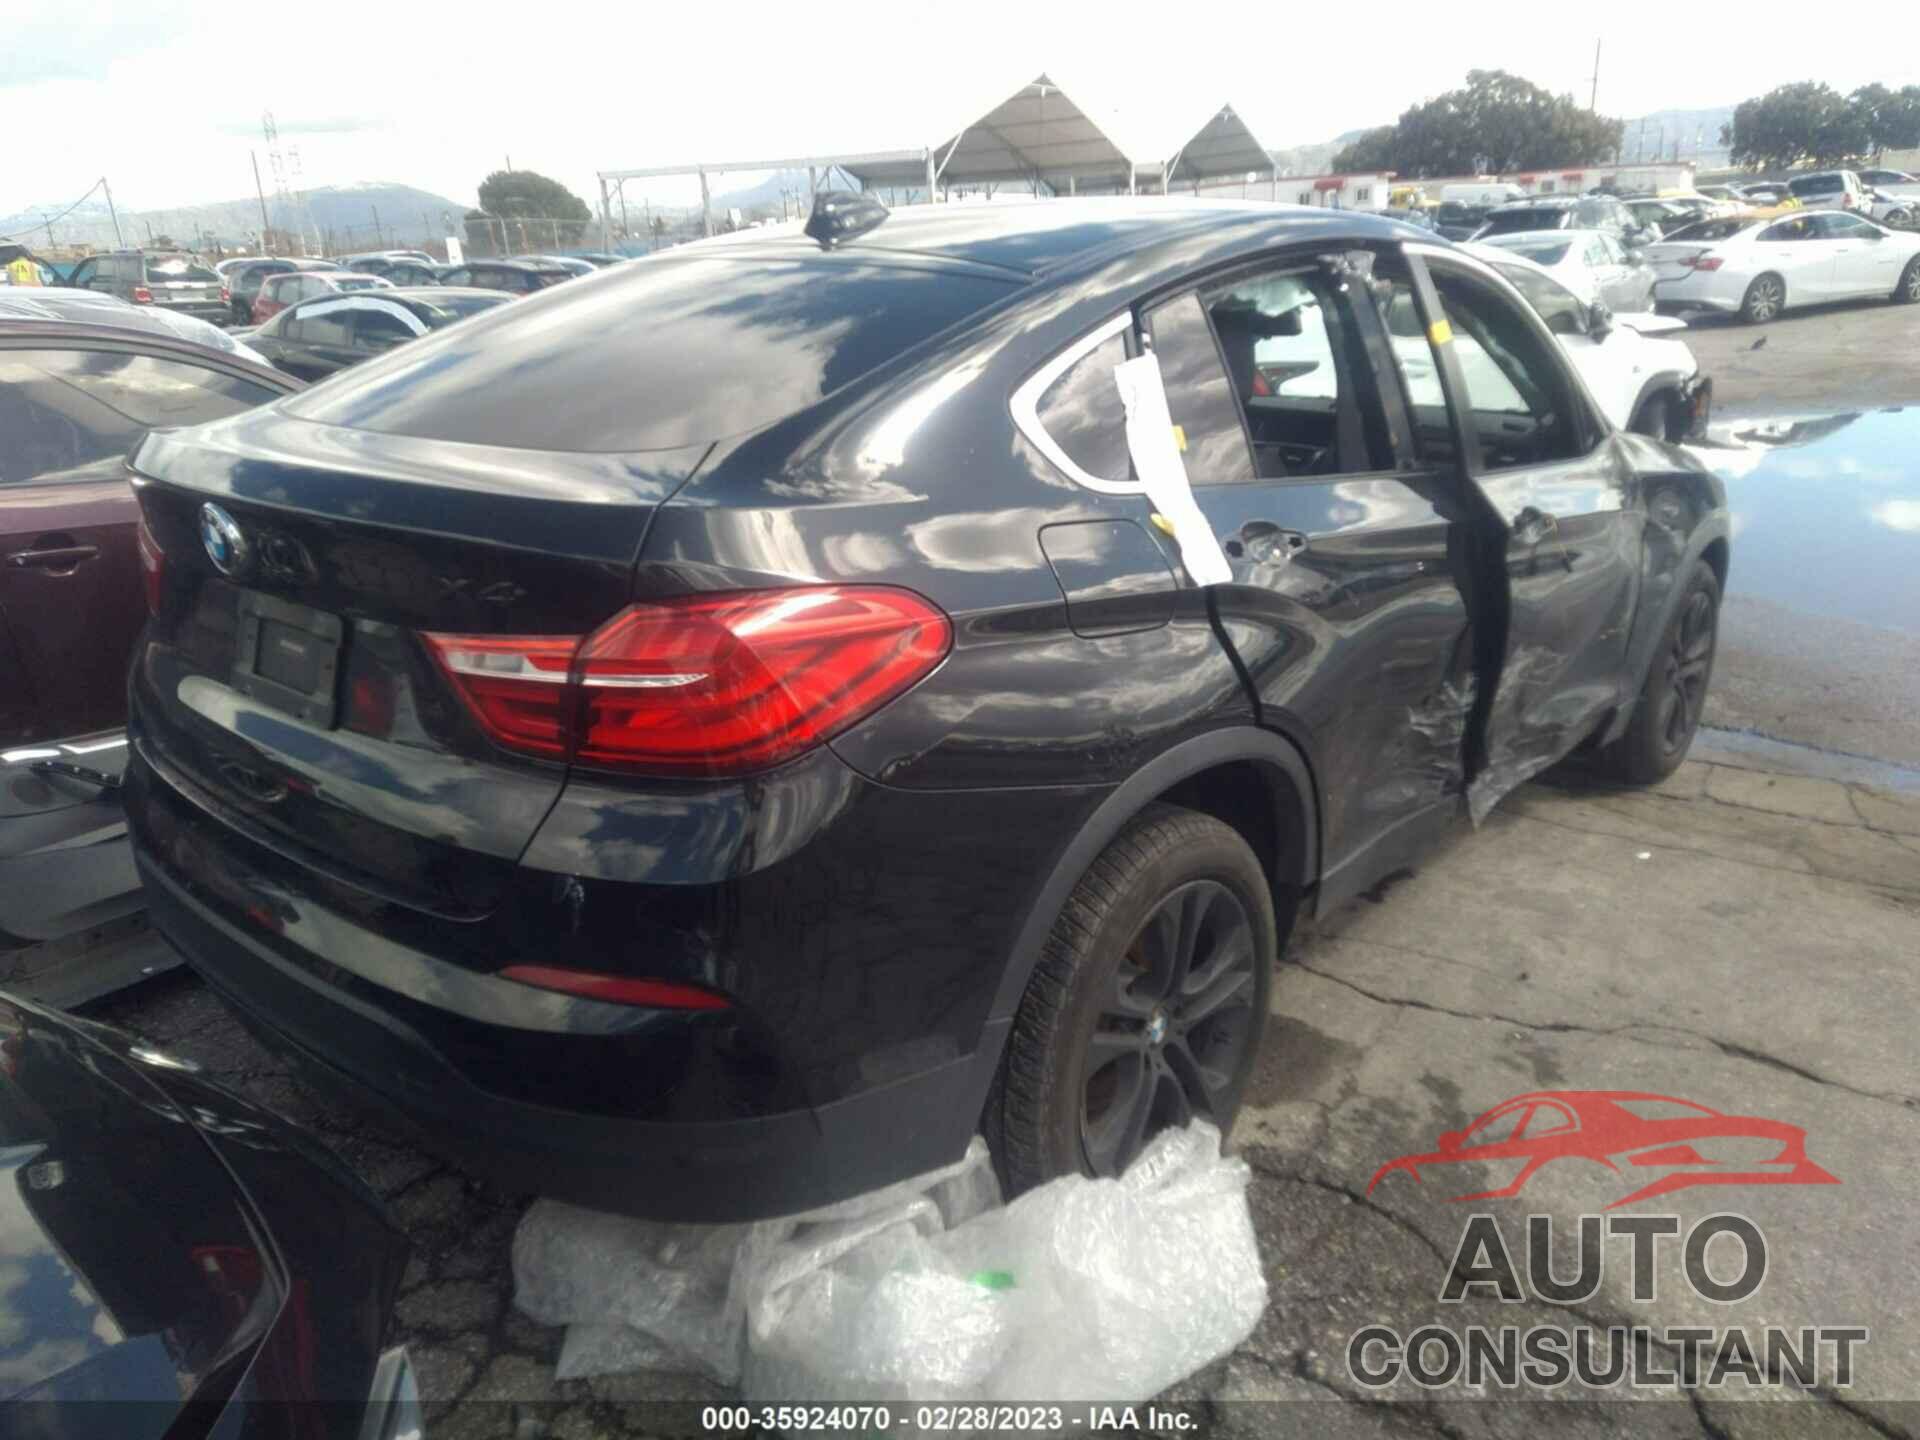 BMW X4 2015 - 5UXXW3C57F0M88165